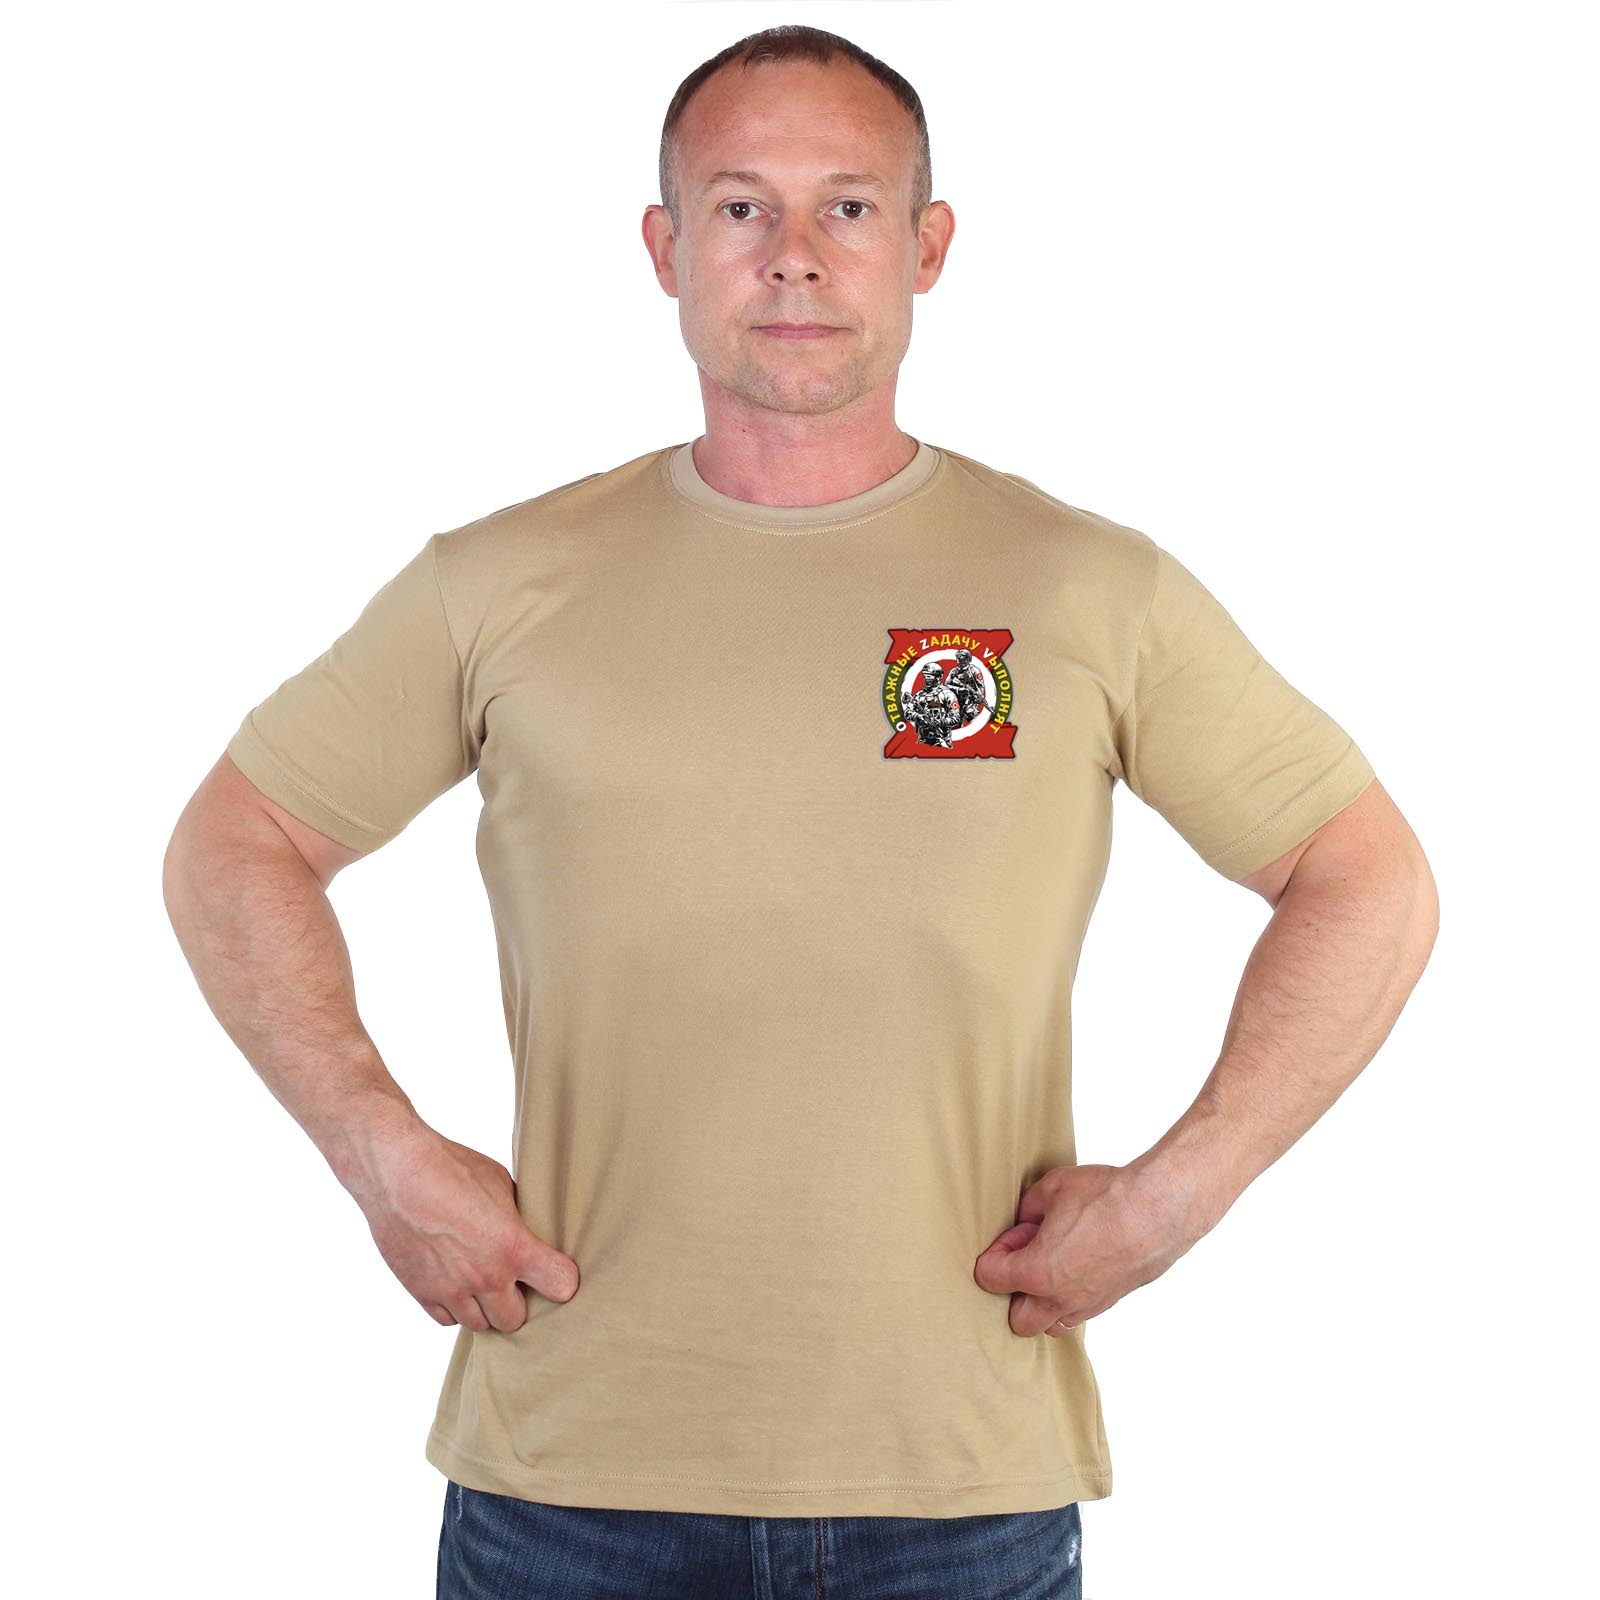 Песочная футболка с термотрансфером "Отважные Zадачу Vыполнят"